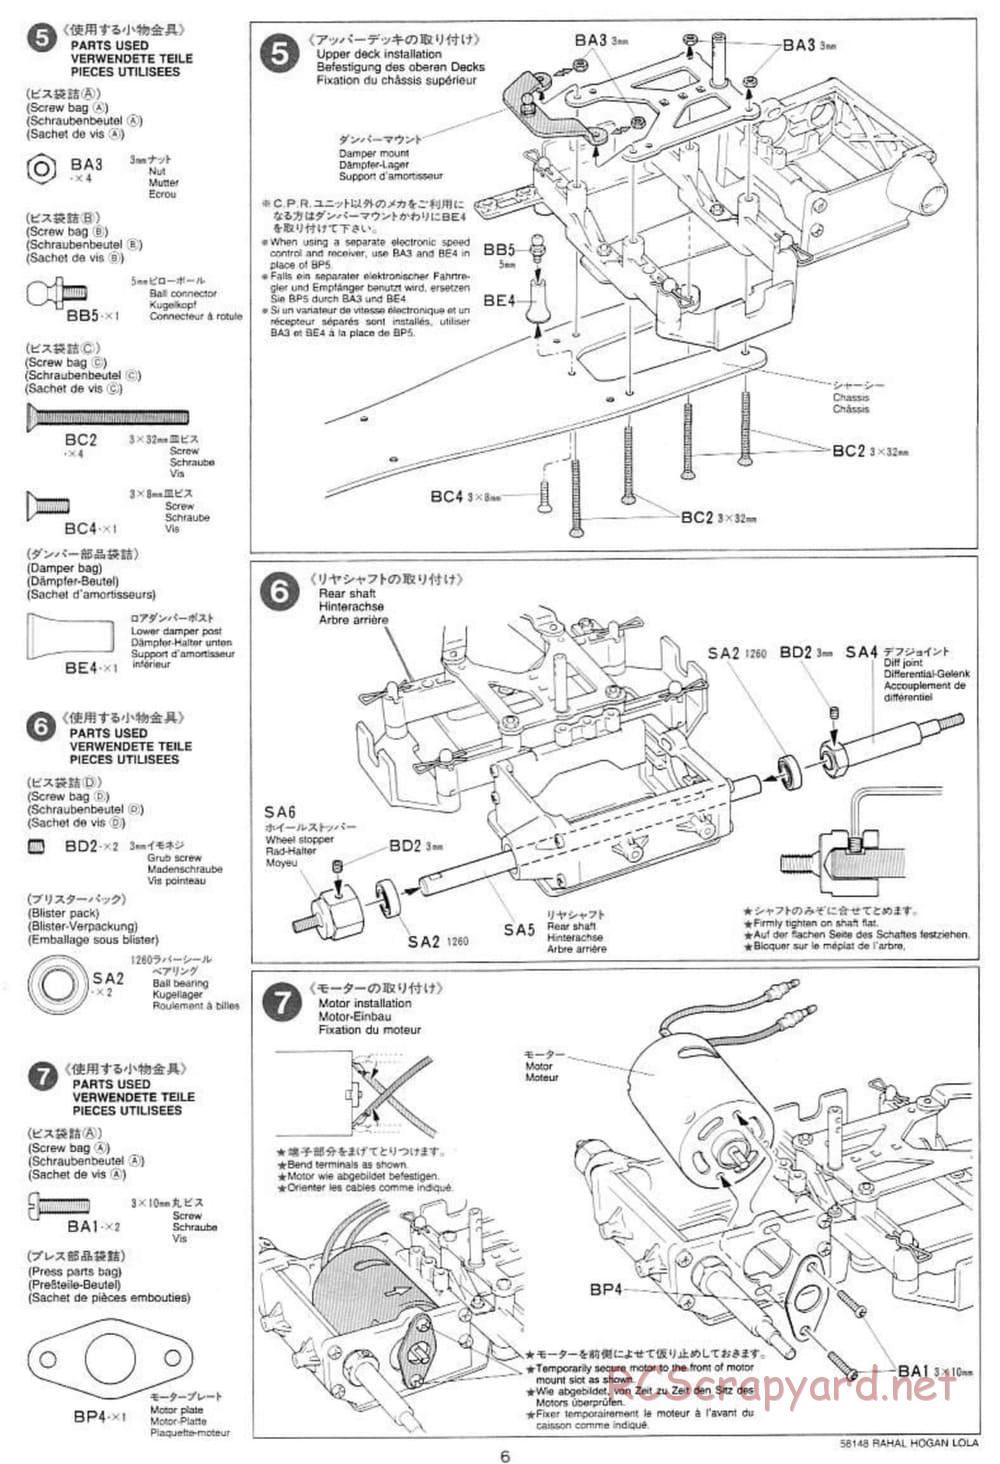 Tamiya - Rahal-Hogan Motorola Lola T94/00 Honda - F103L Chassis - Manual - Page 6